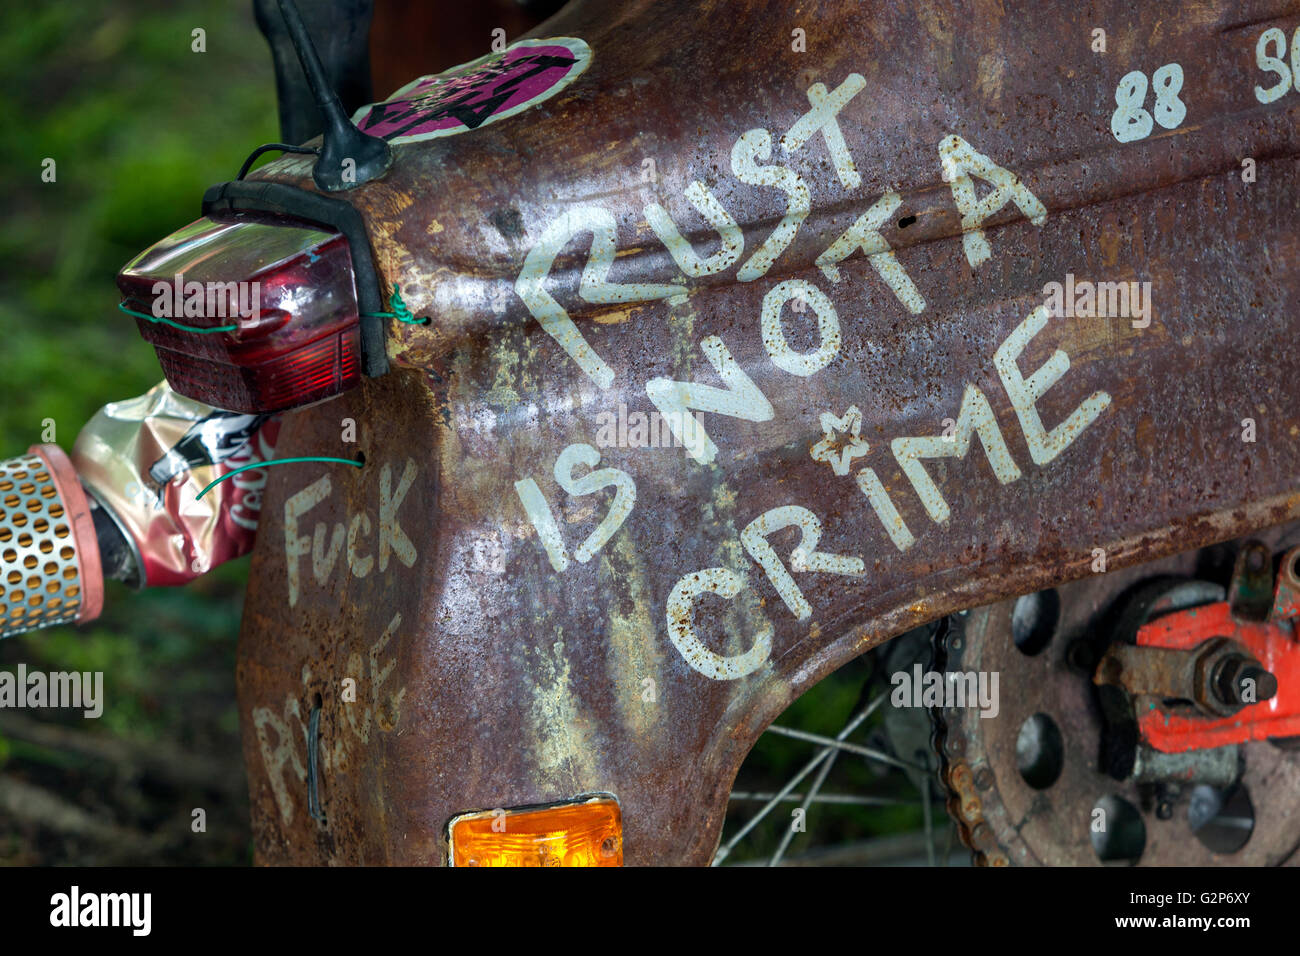 La ruggine non è un reato, l'iscrizione su un motociclo ceca Jawa 21 Foto Stock